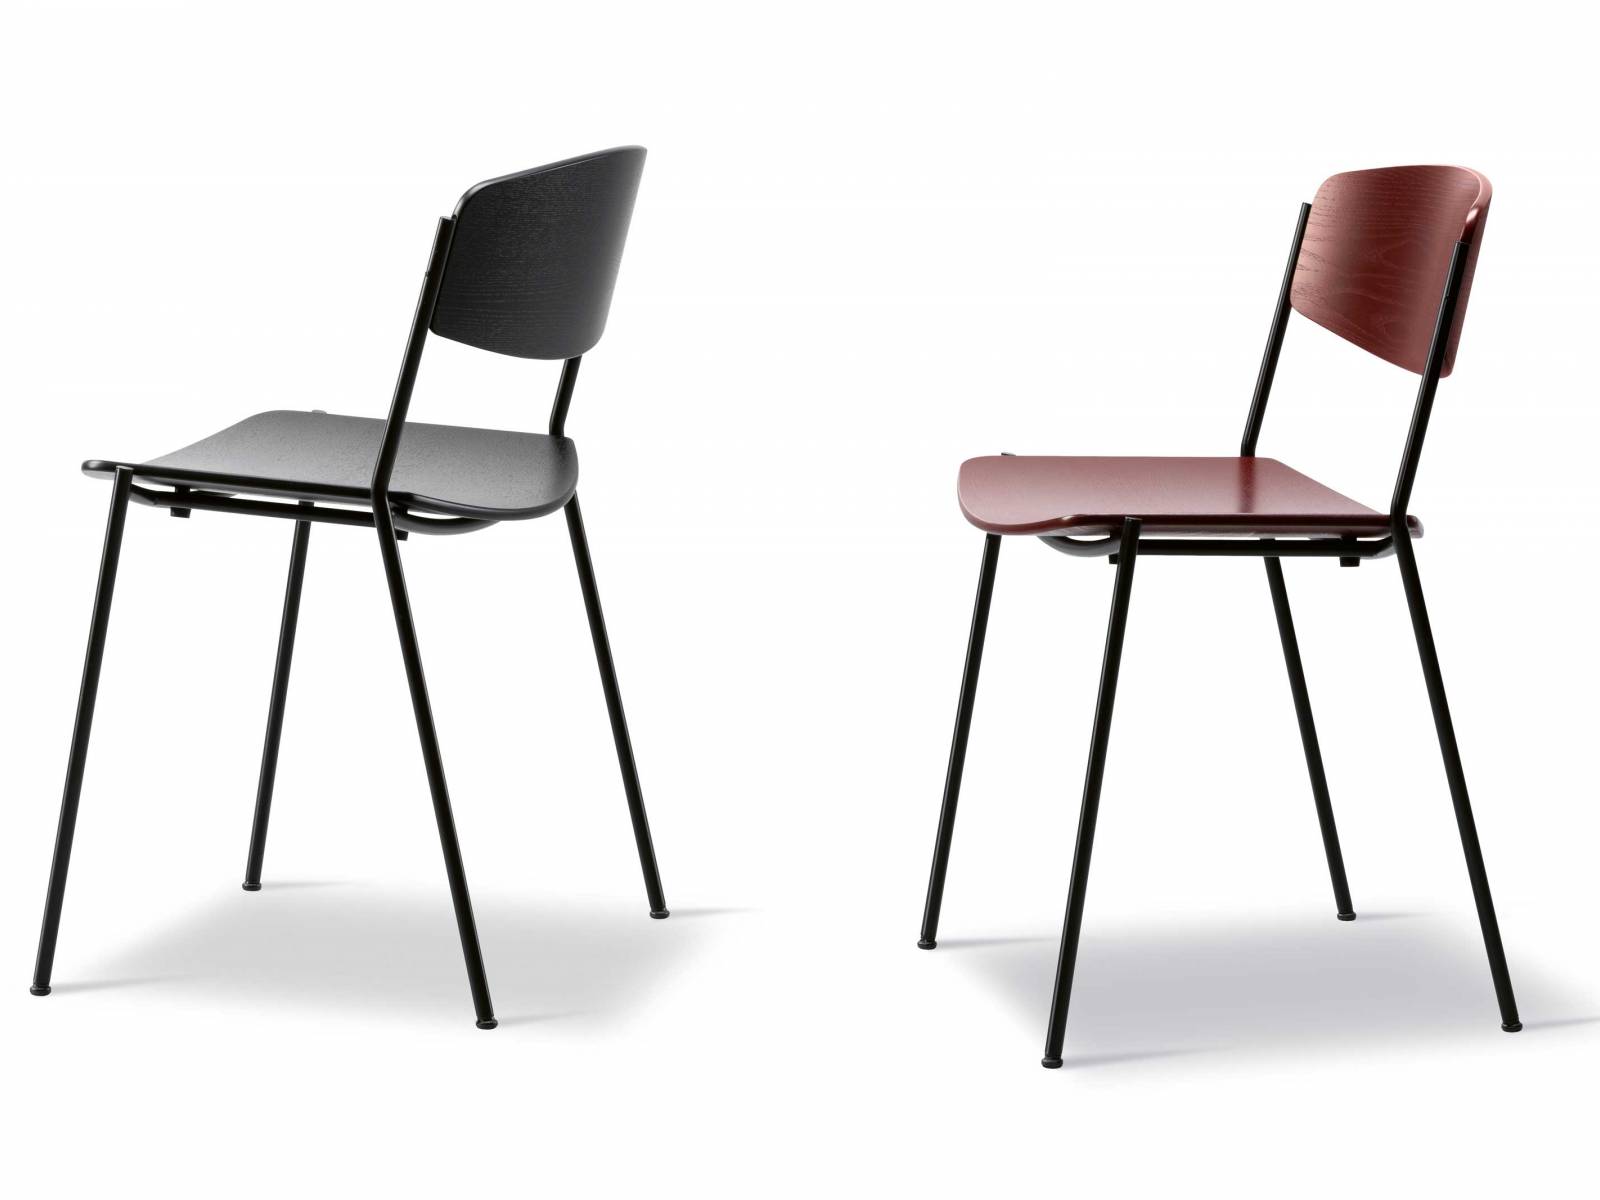 67 Jahre lang fristete der «Lynderup Chair» sein Dasein als Skizze auf dem Papier, bis das dänische Familienunternehmen in diesem Jahr beschloss, ihn zu produzieren. Die dänische Designlegende Børge Mogensen gab dem Stuhl alles, was ein funktionales Sitzmöbel ausmacht — einen Metallrohrrahmen und eine breite Sitzfläche aus Sperrholz. Der «Lynderup Chair» ist stapelbar, in schwarz oder natur, mit schwarzen oder verchromten Beinen erhältlich. Fredericia.